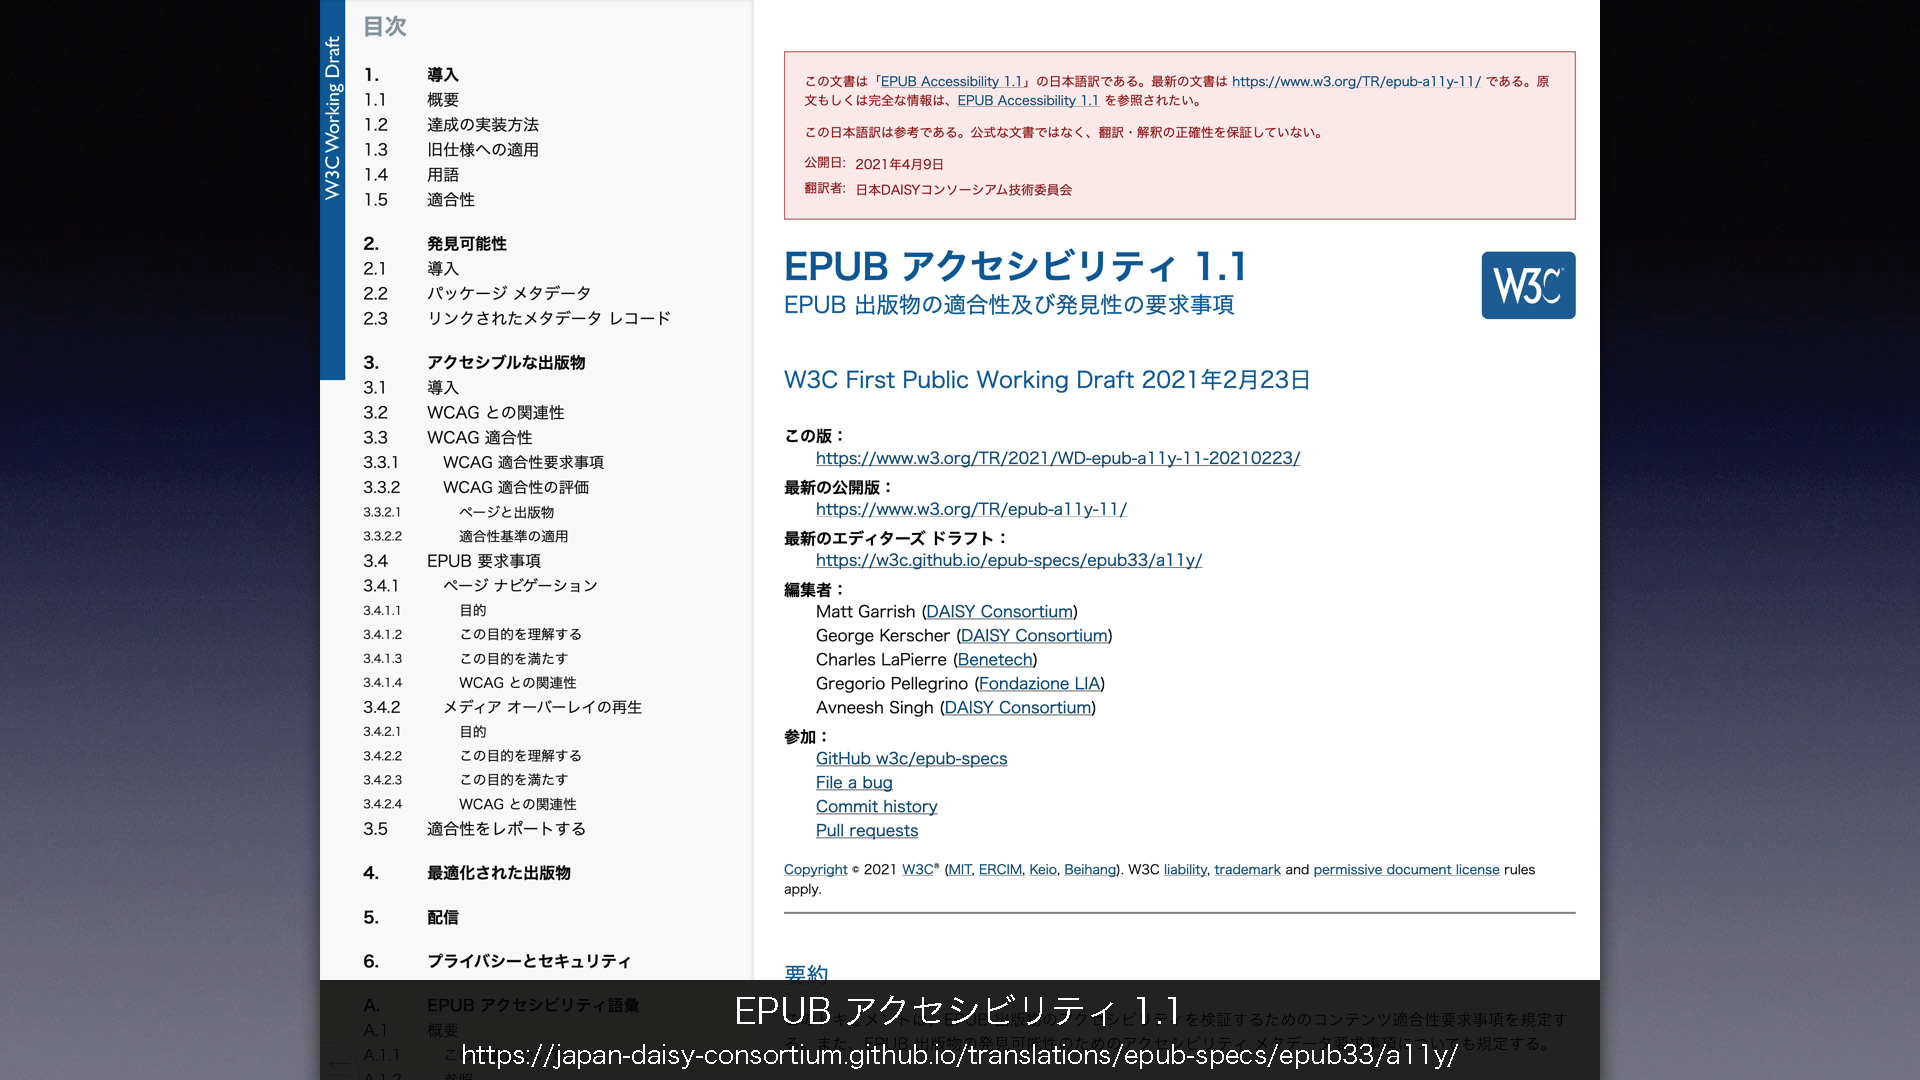 「EPUBアクセシビリティ1.1」について掲載されたウェブページの画像
	